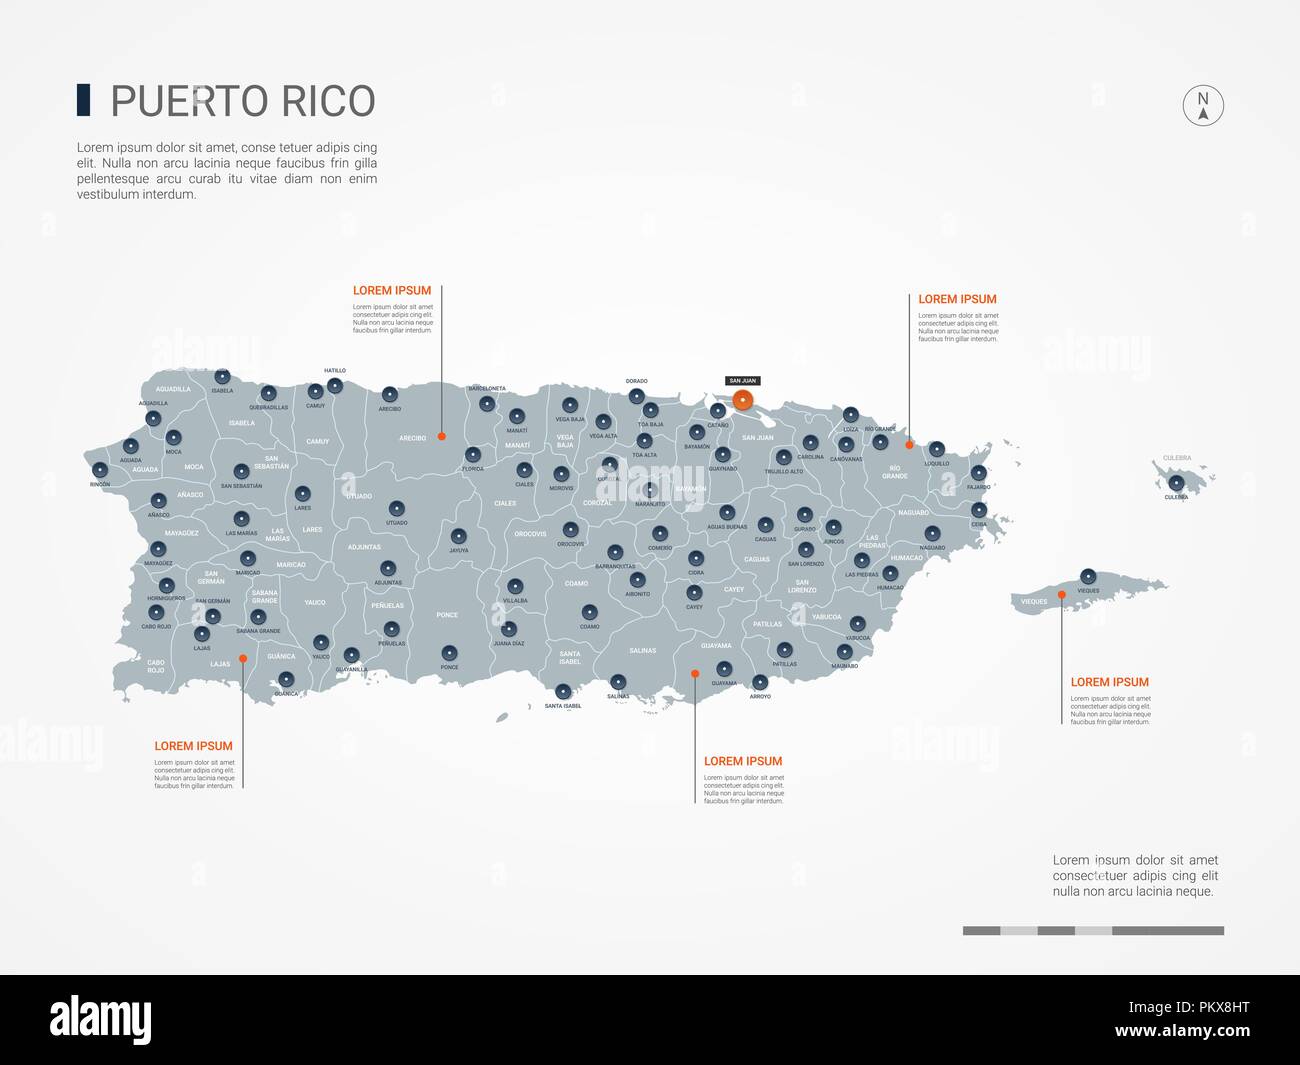 Puerto Rico mappa con le frontiere, città capitale e divisioni amministrative. Infografico mappa vettoriale. Livelli modificabili chiaramente etichettati. Illustrazione Vettoriale